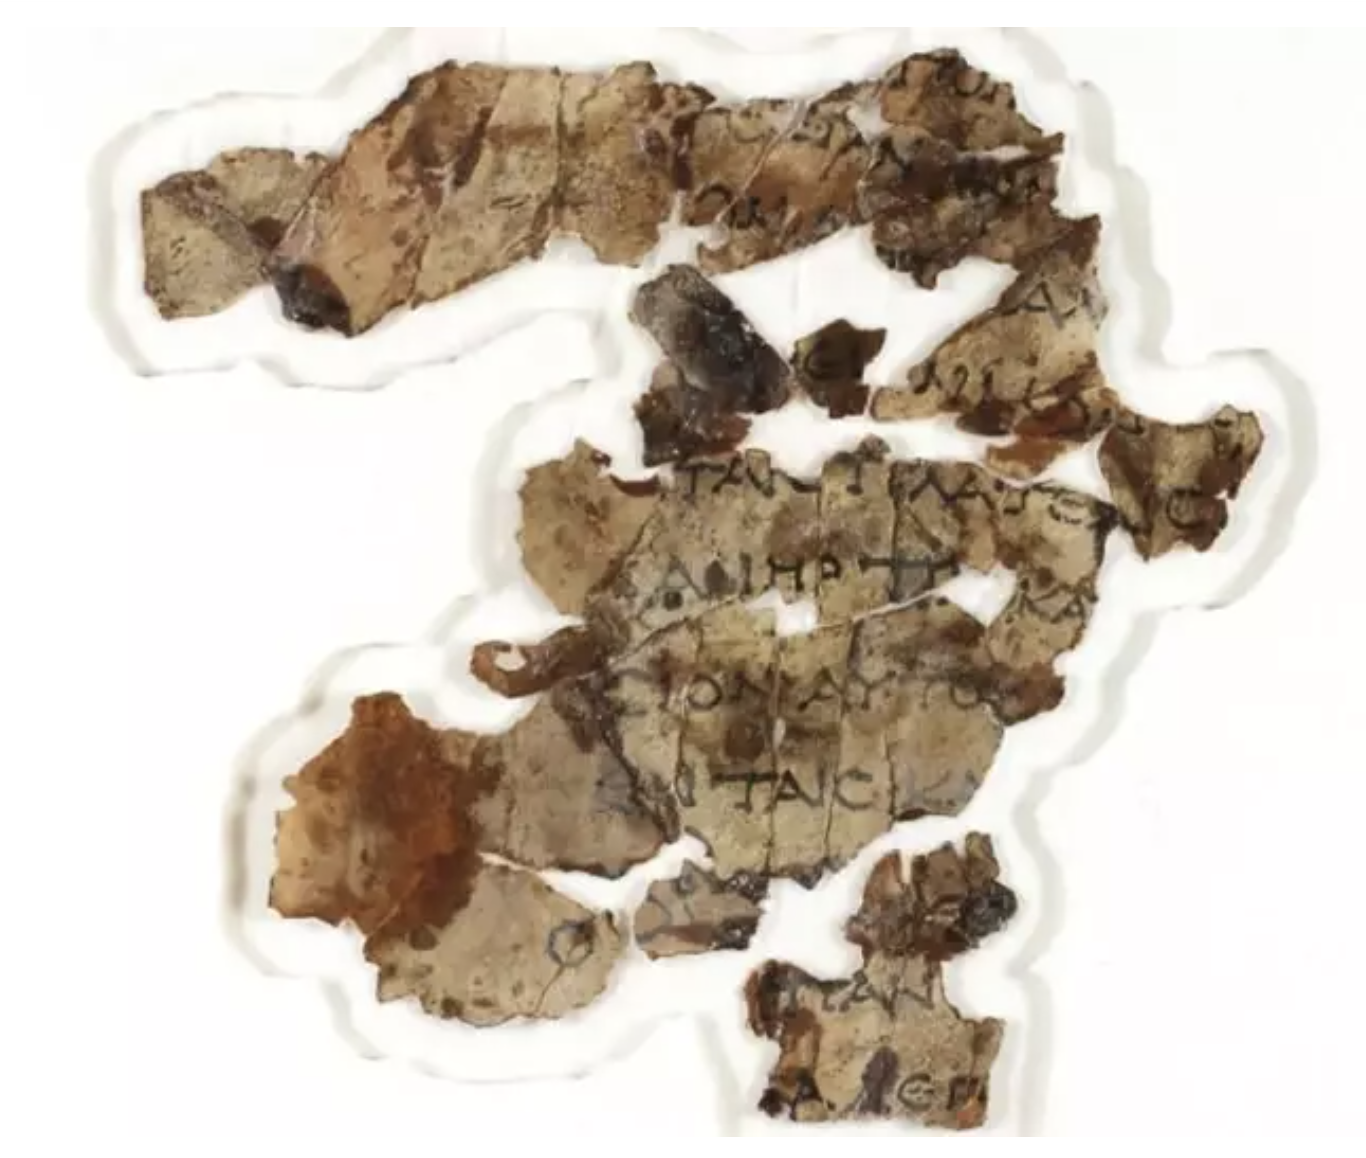 Descubren más trozos de manuscritos del Mar Muerto 60 años después de aparecer los primeros-Foto: ISRAEL ARCHEOLOGICAL AUTHORITY